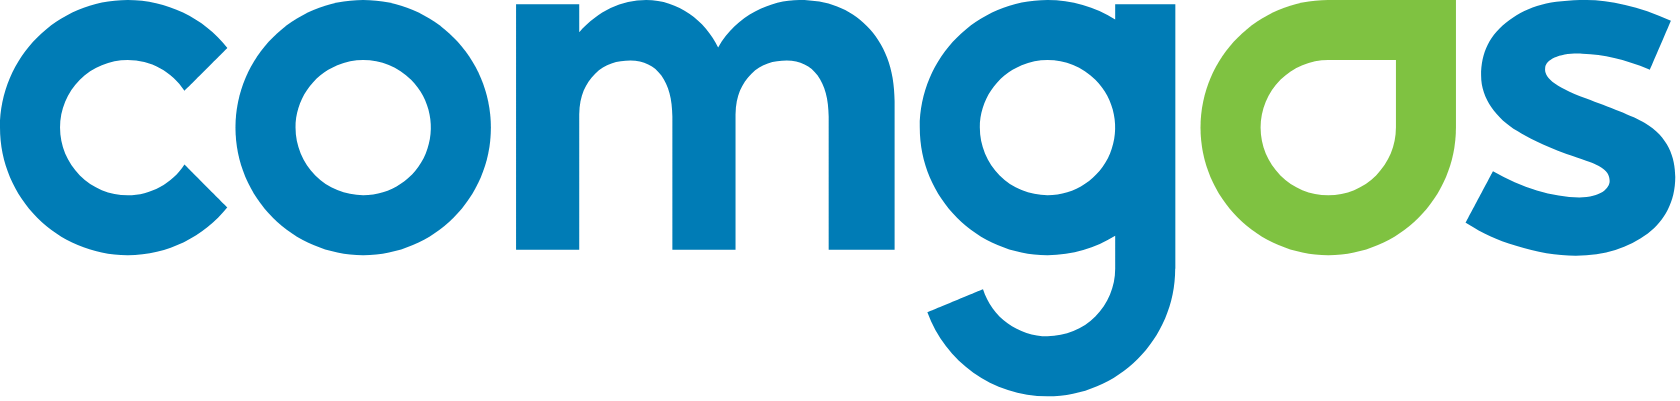 Comgás logo large (transparent PNG)